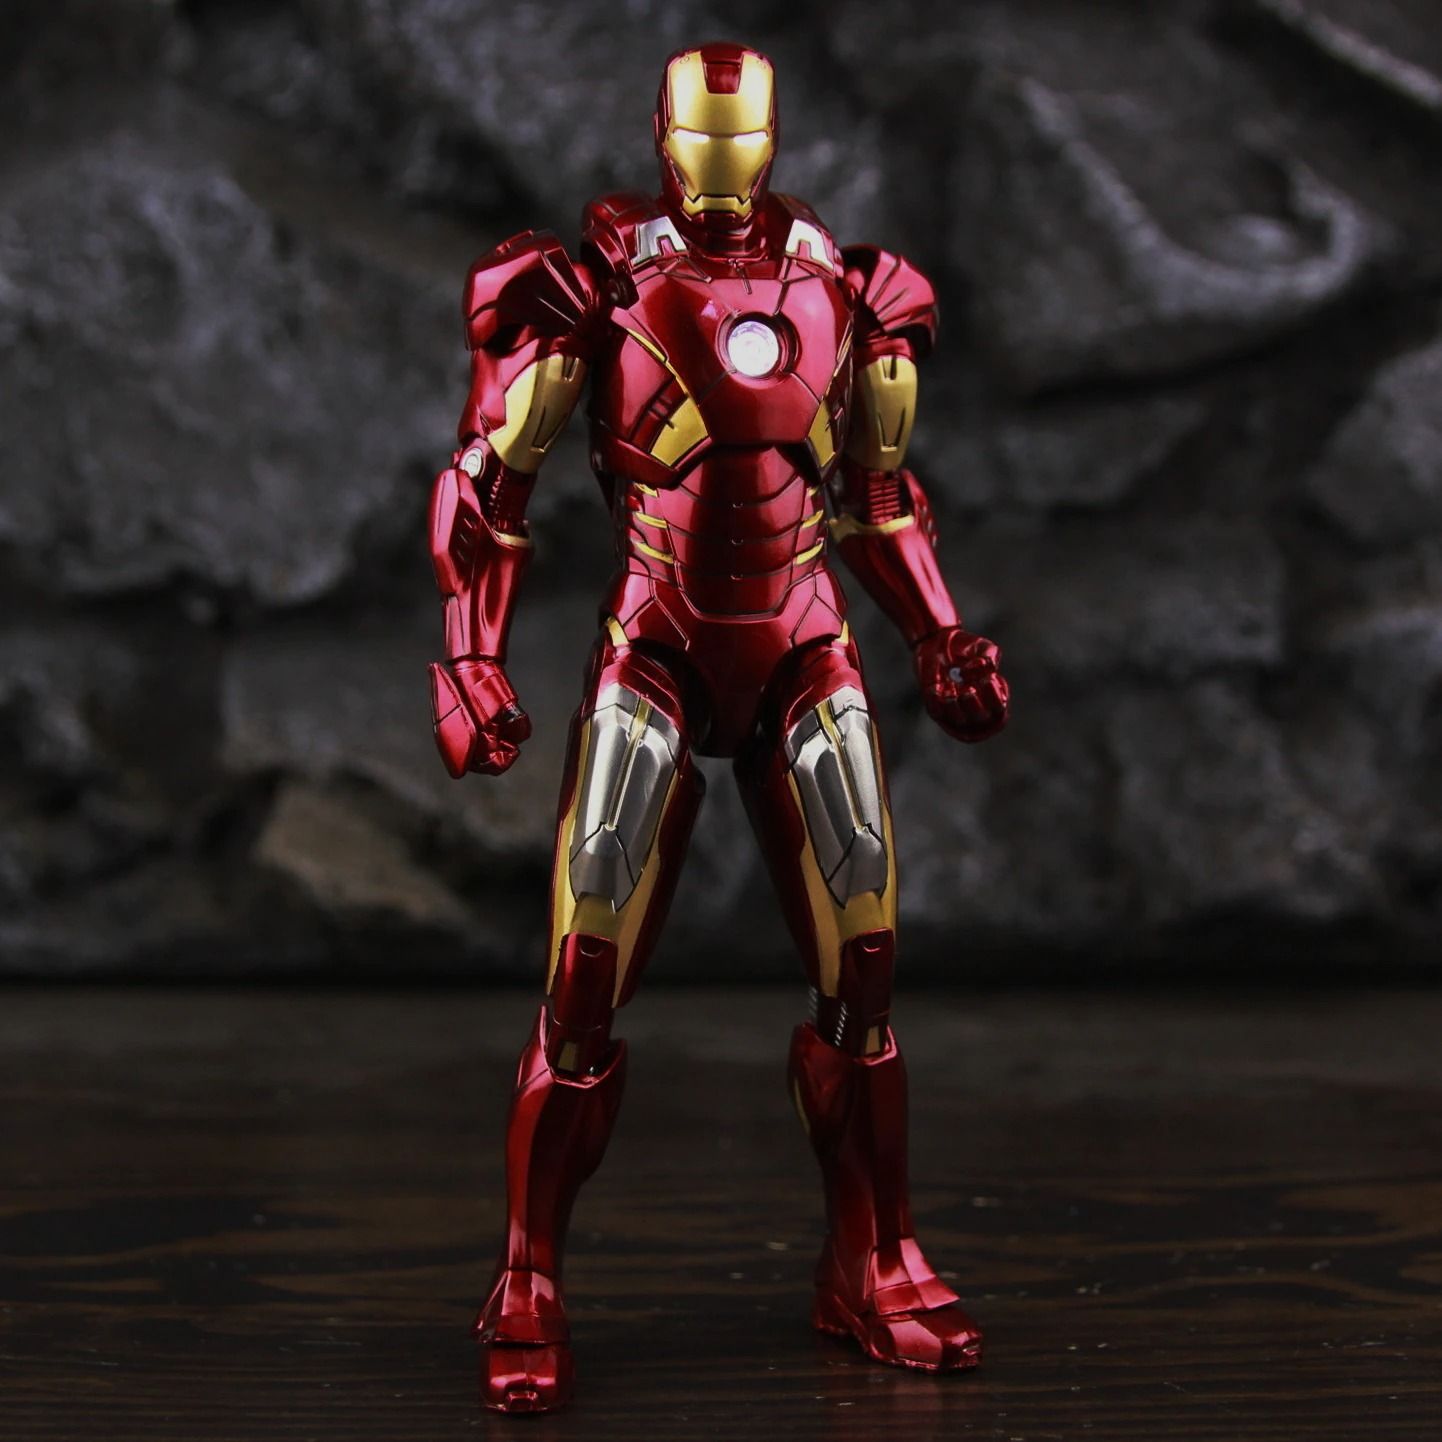  Mô hình nhân vật Marvel Iron man người sắt có đèn MK7 Mark VII Avengers SHF tỉ lệ 1:10 18CM ZD Toys FG263 